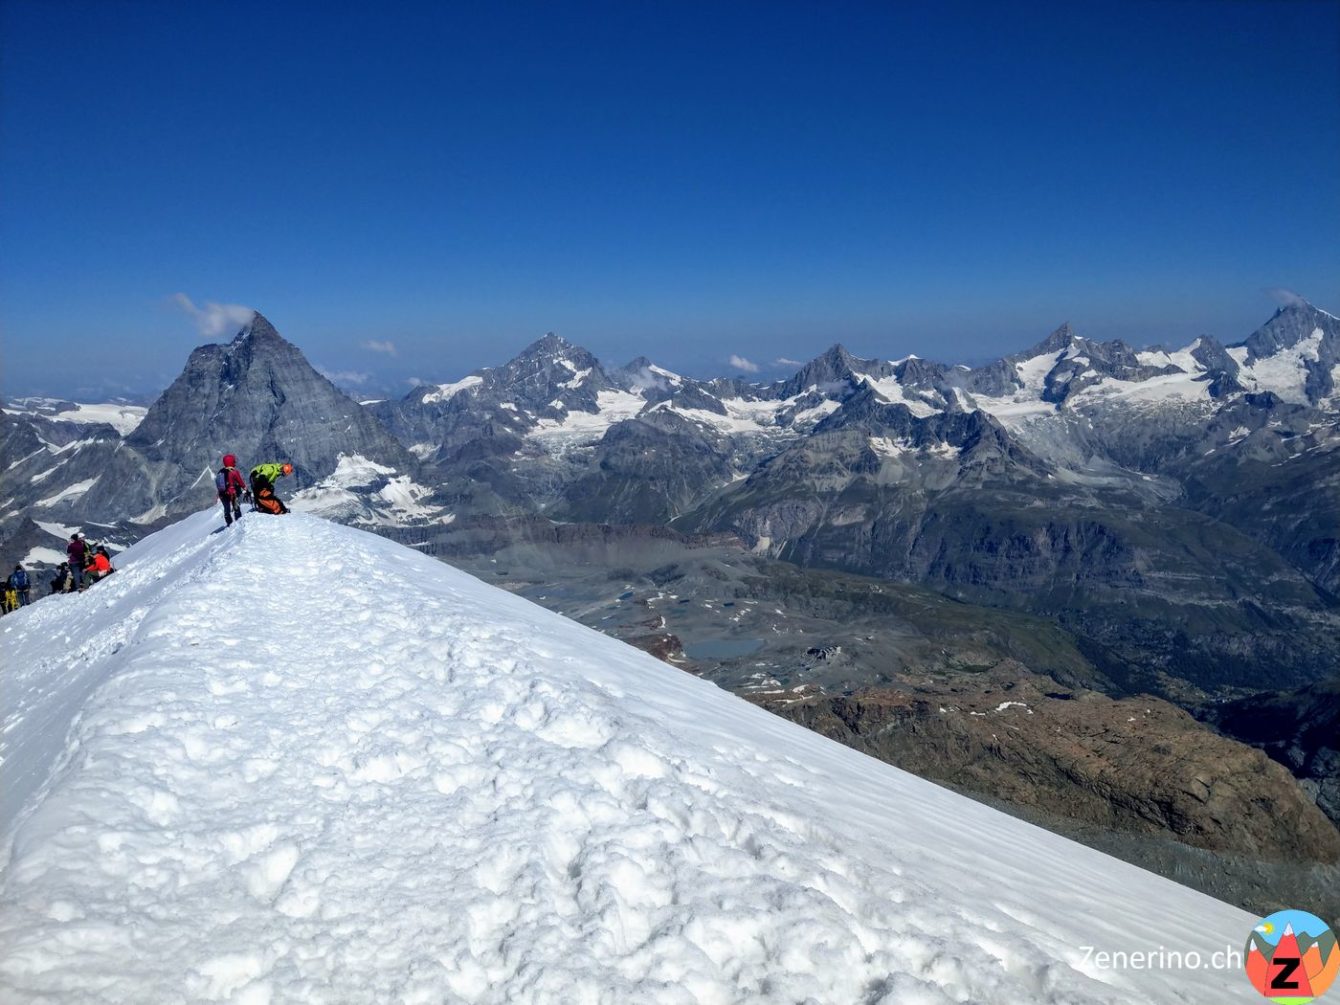 Breithorn Gipfelgrat, Matterhorn, Dent Blanche, Ober Gabelhorn, Zinalrothorn, Weisshorn